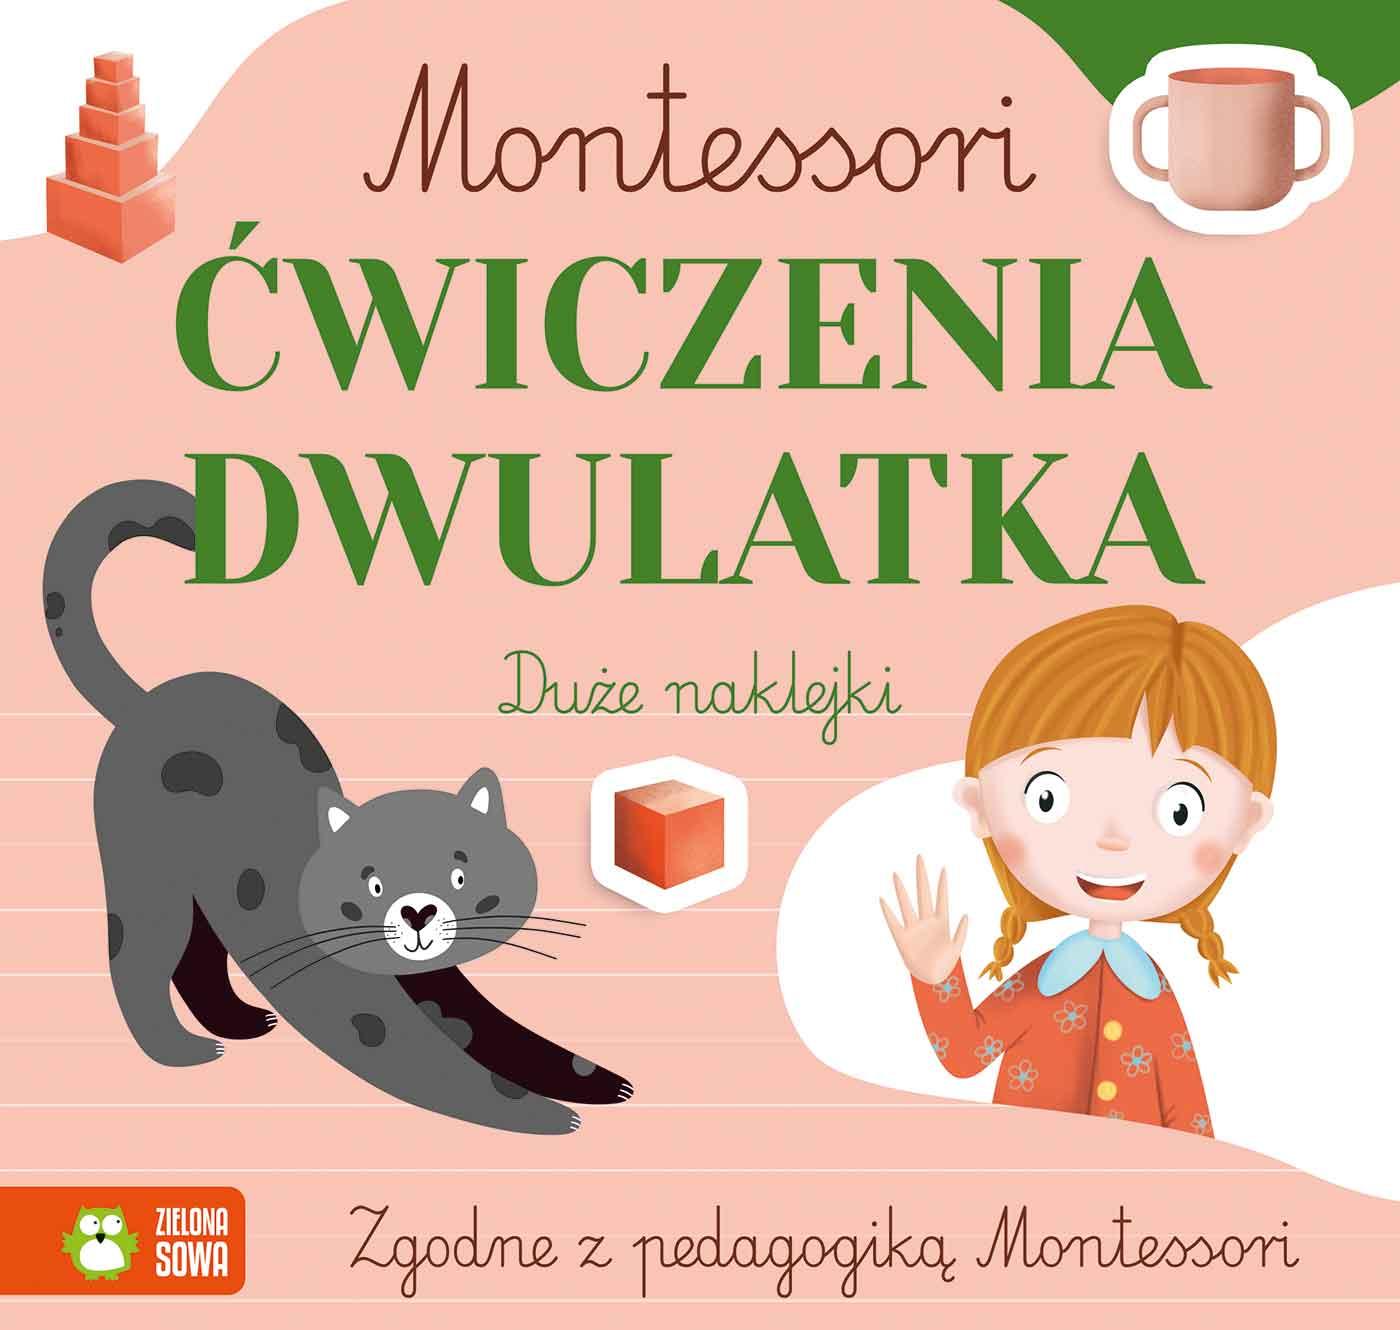 Zielona Sowa: Montessori. Ćwiczenia dwulatka - Noski Noski